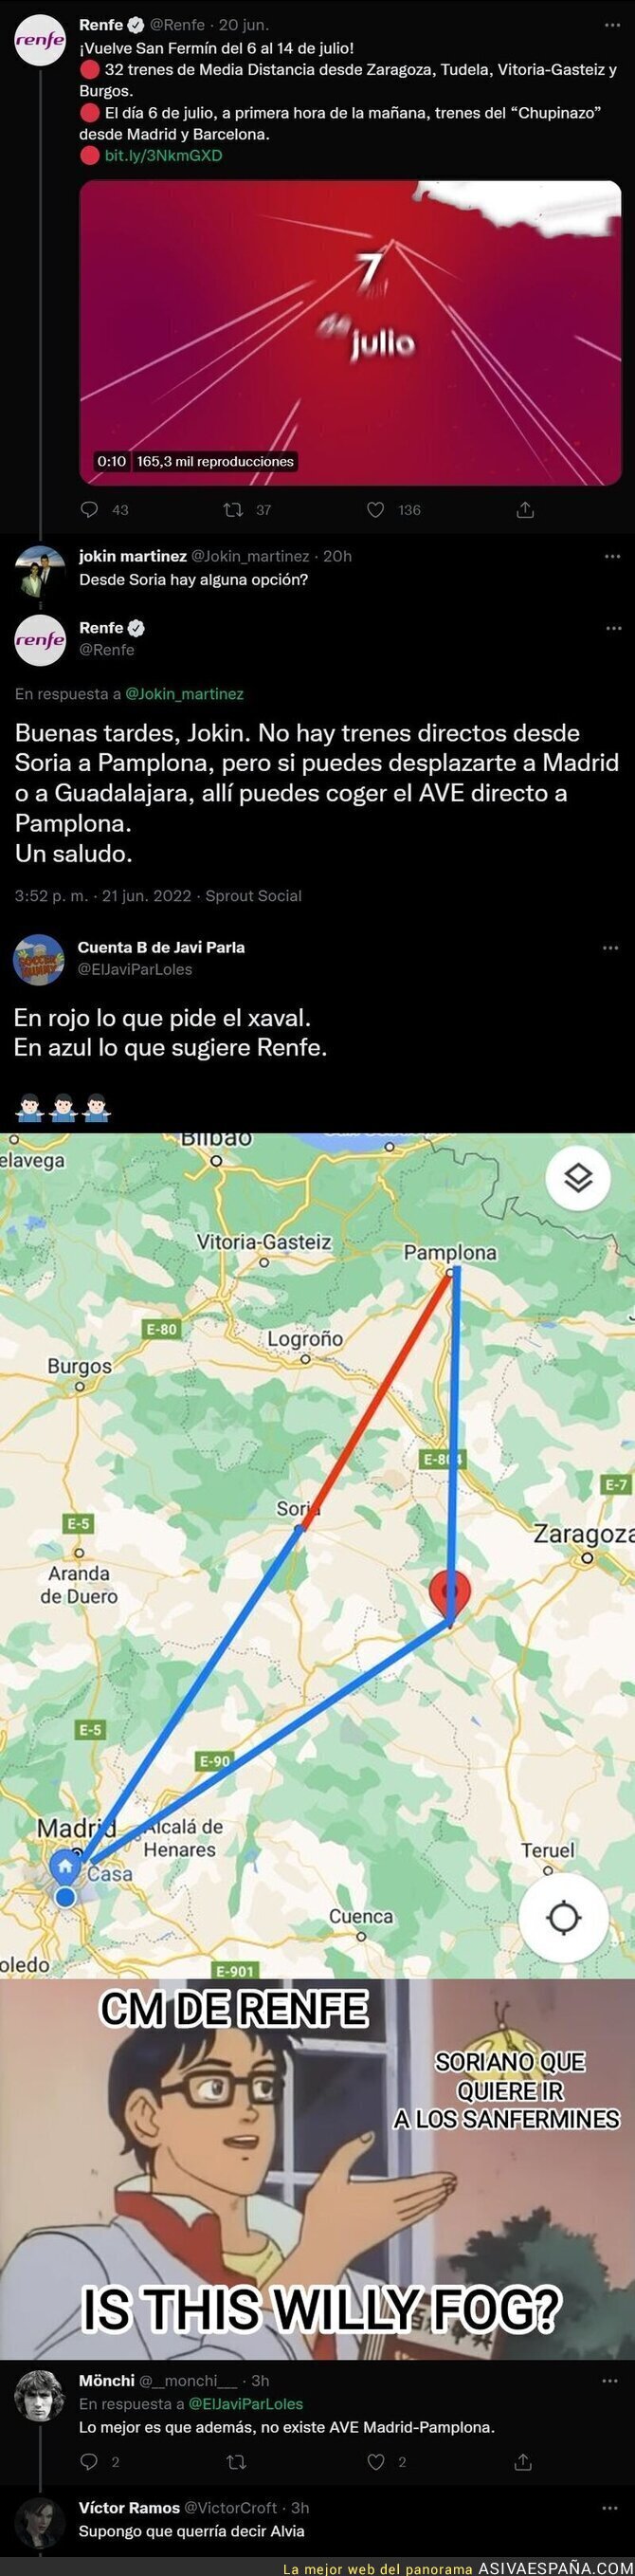 Un usuario le pide a RENFE como ir de Soria a Pamplona en San Fermines y la respuesta es muy loca